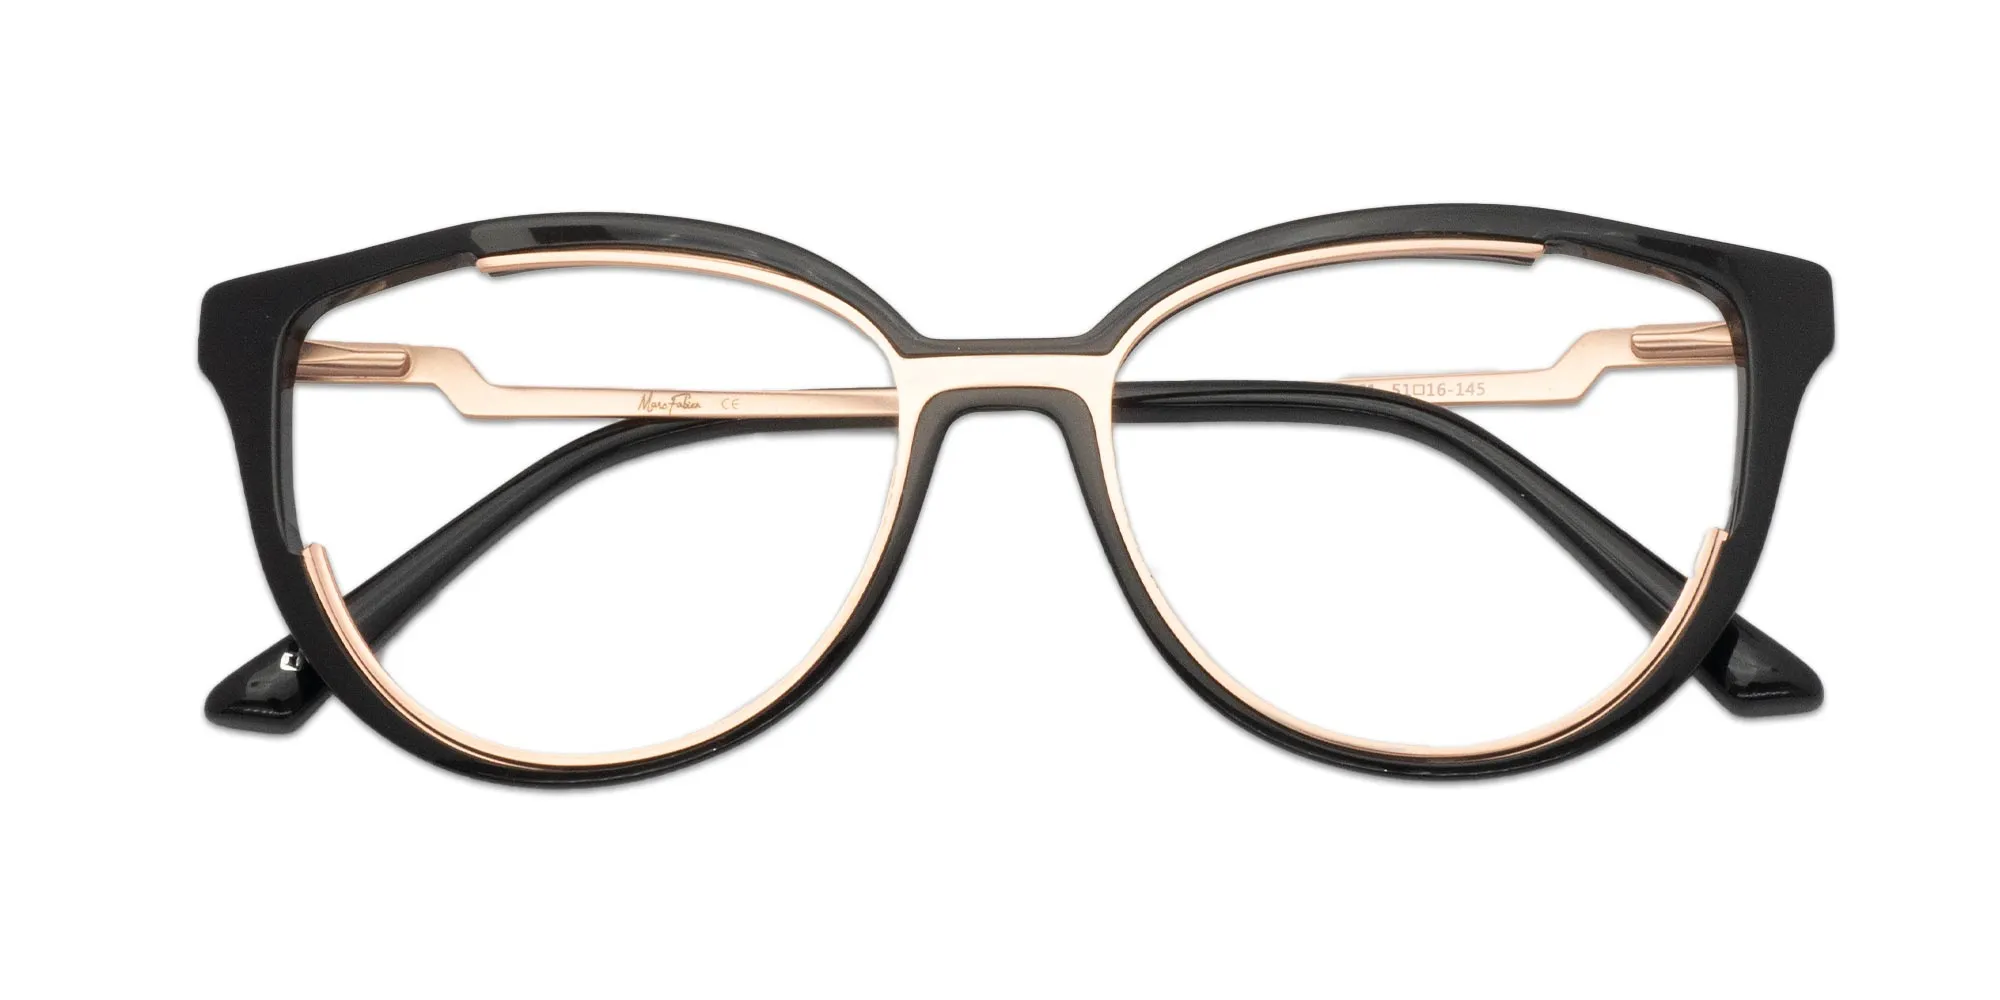 Designer Glasses Frames For Women-2